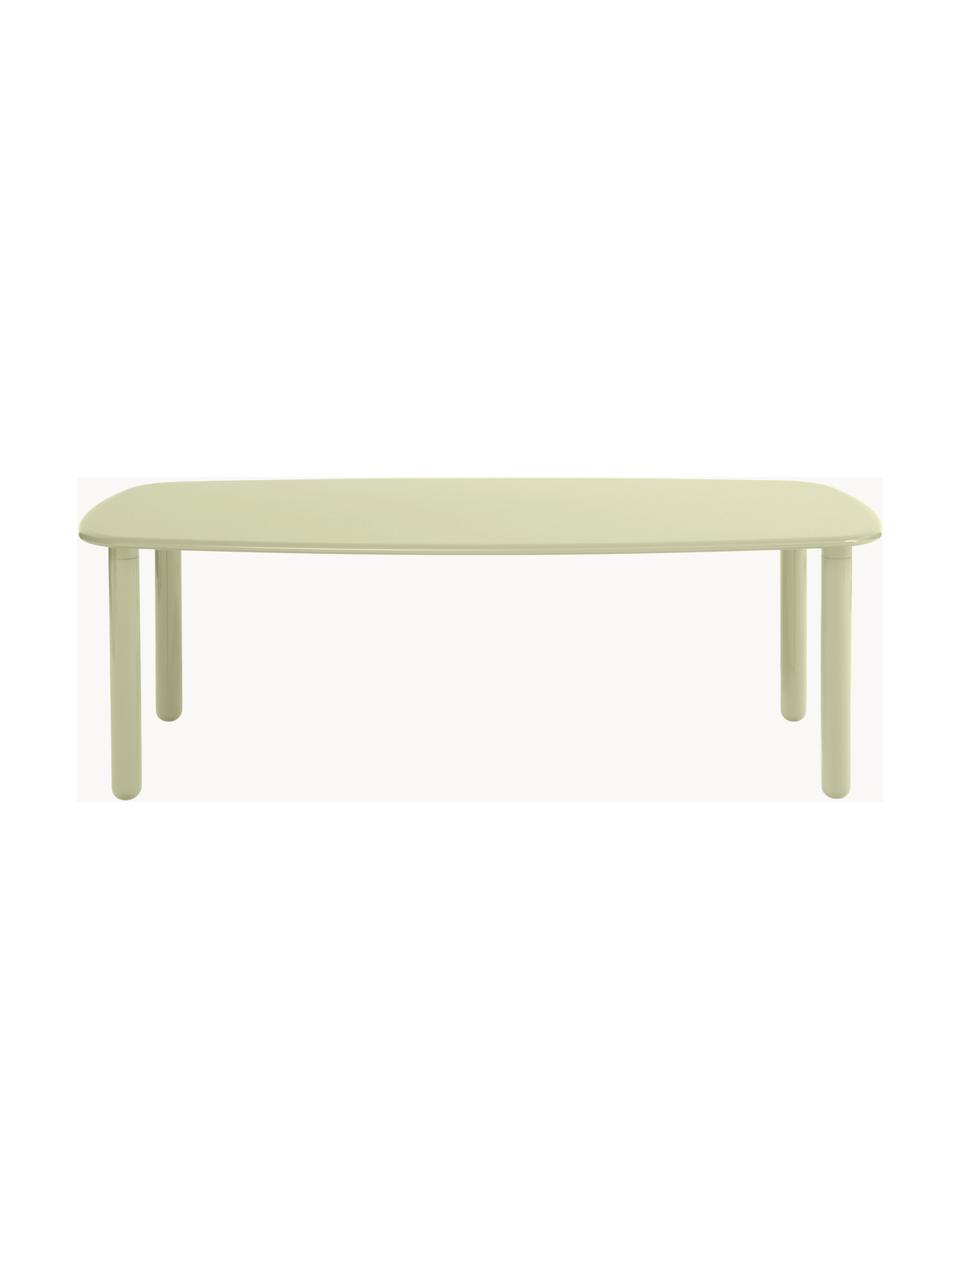 Table en bois Tottori, tailles variées, MDF, laqué, Vert clair, haute brillance, larg. 180 x prof. 106 cm